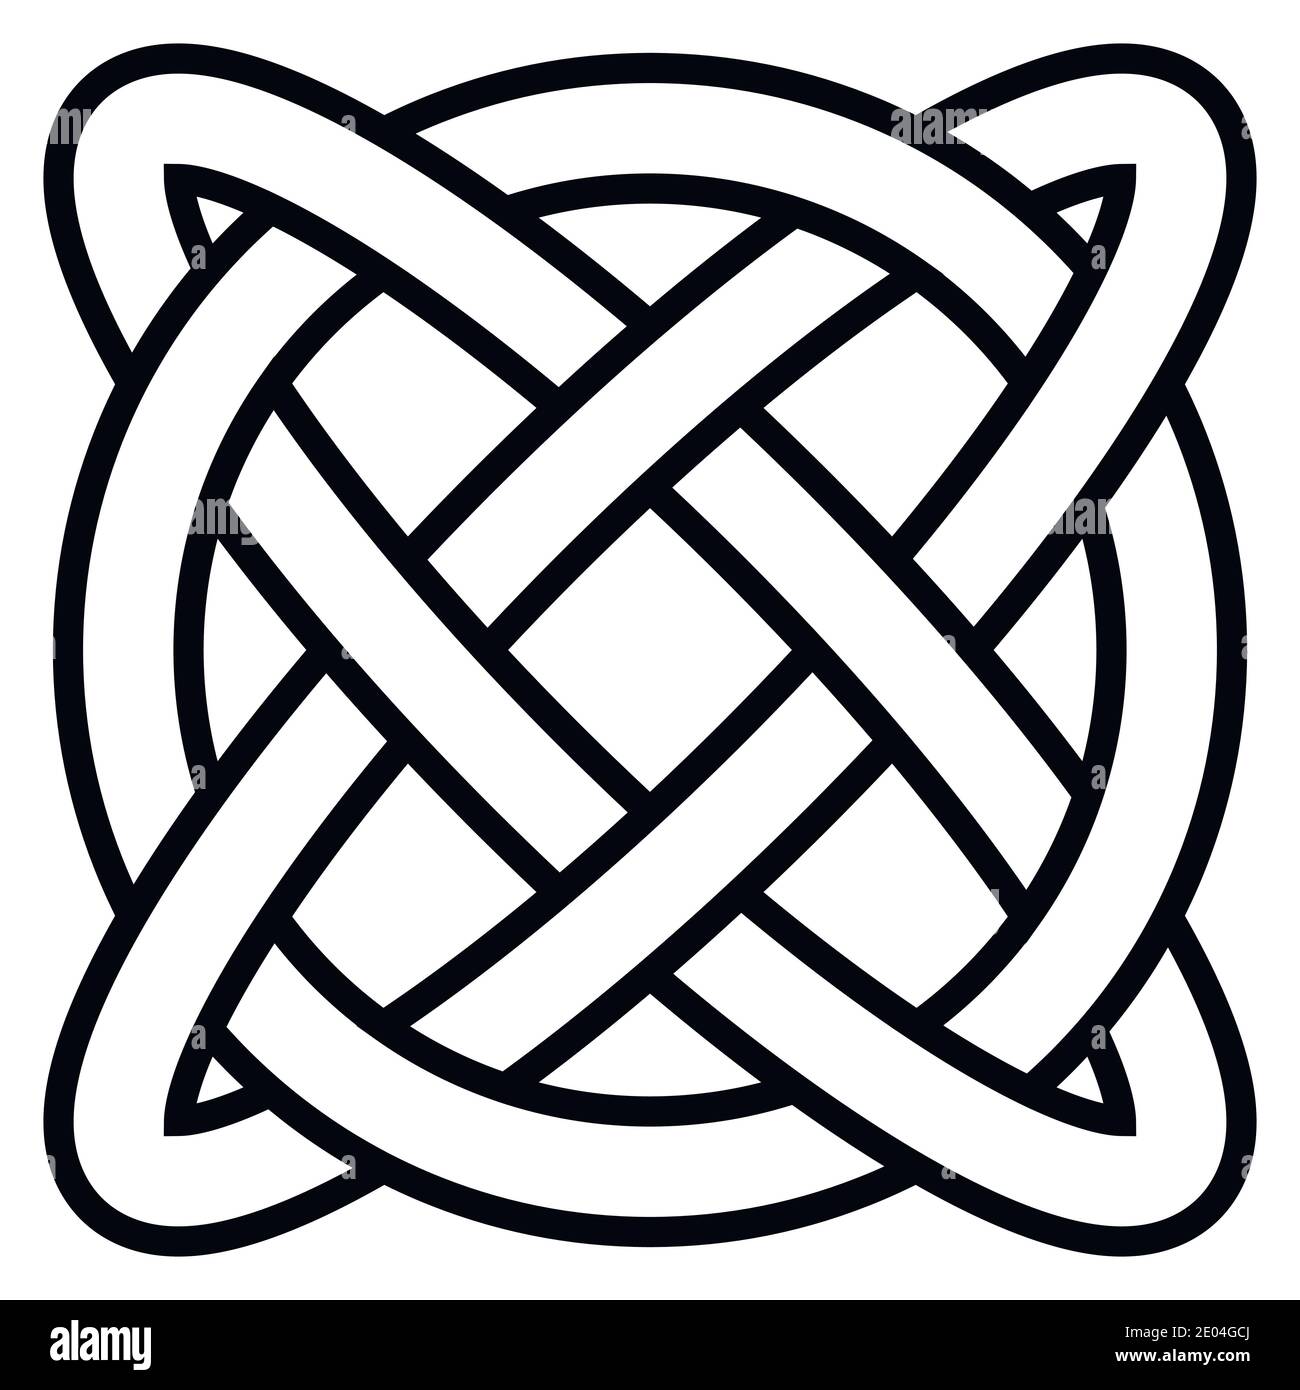 Nodo celtico simbolo vita eterna infinito, vettore amuleto simbolo longevità e salute, simbolo di salute mentale e benessere Illustrazione Vettoriale